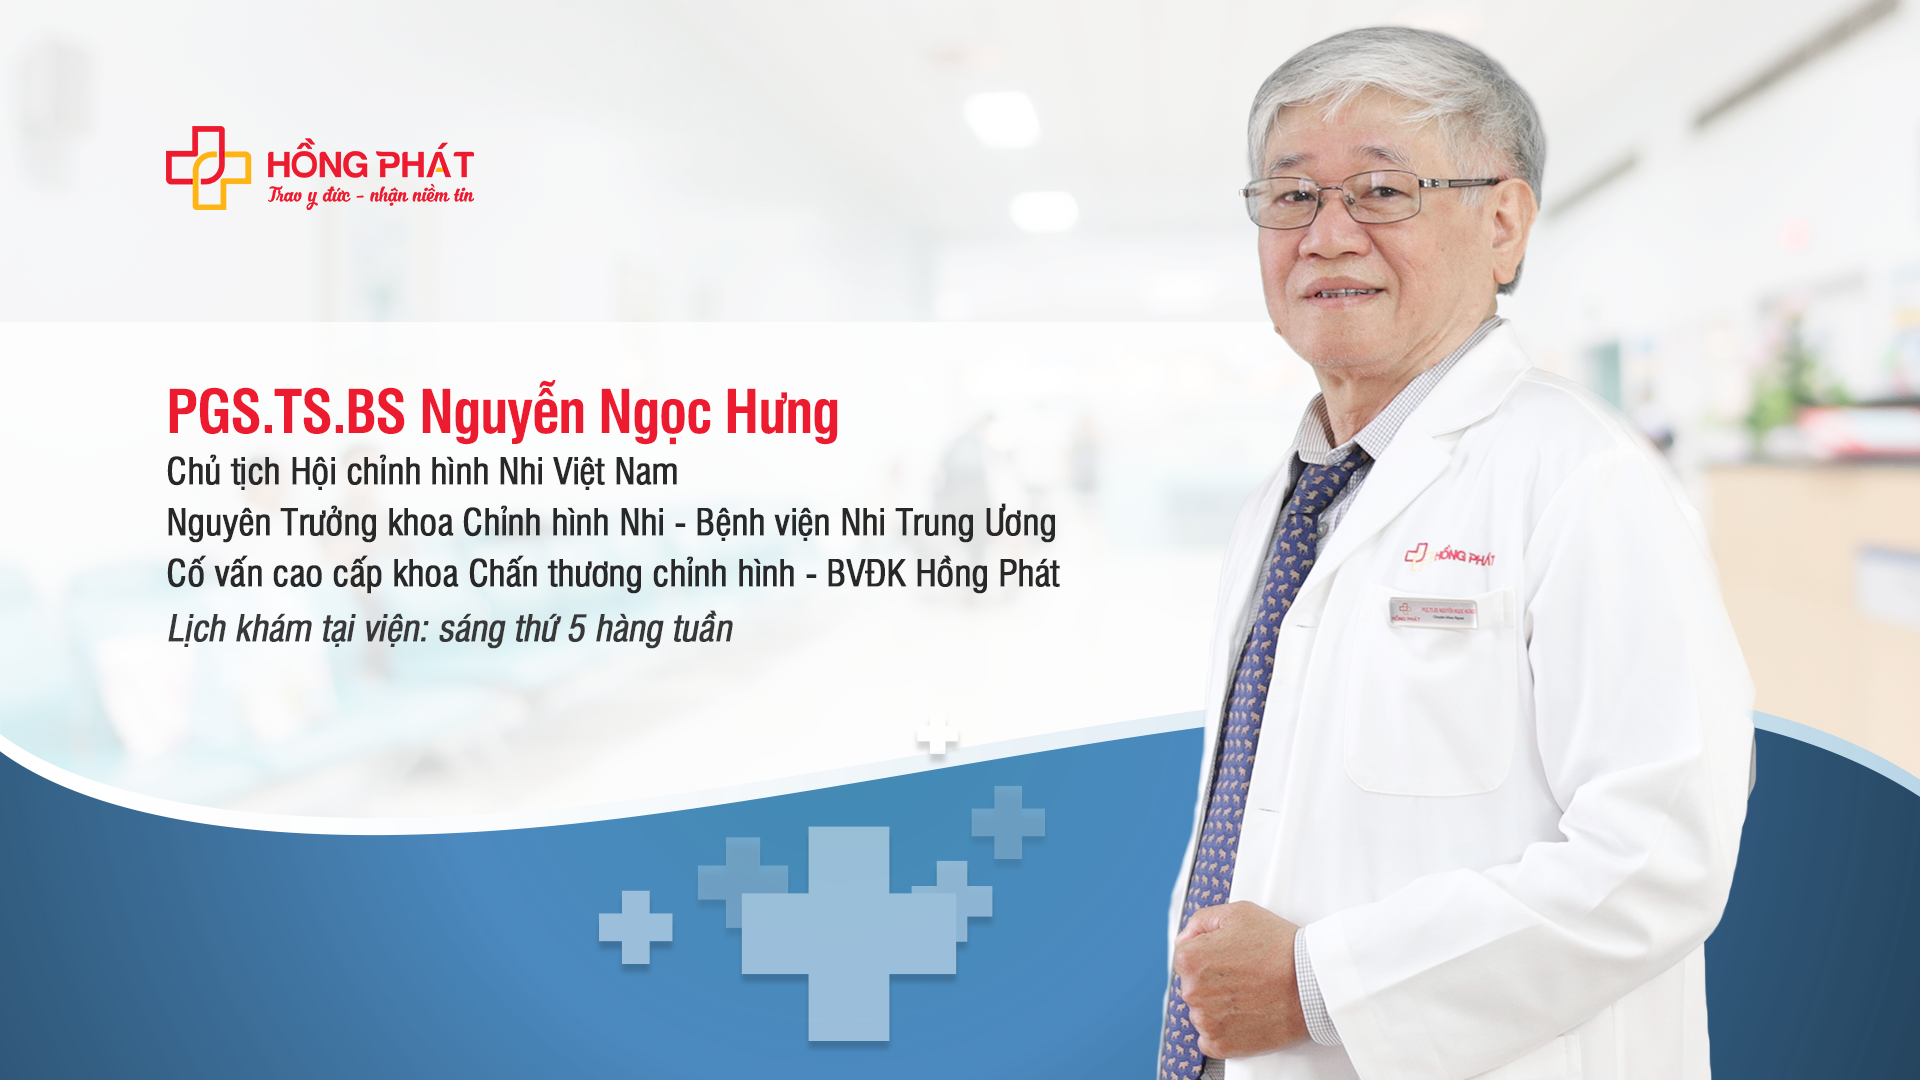 PGS. TS. BS Nguyễn Ngọc Hưng - Cố vấn chuyên môn cao cấp tại Bệnh viện Đa khoa Hồng Phát